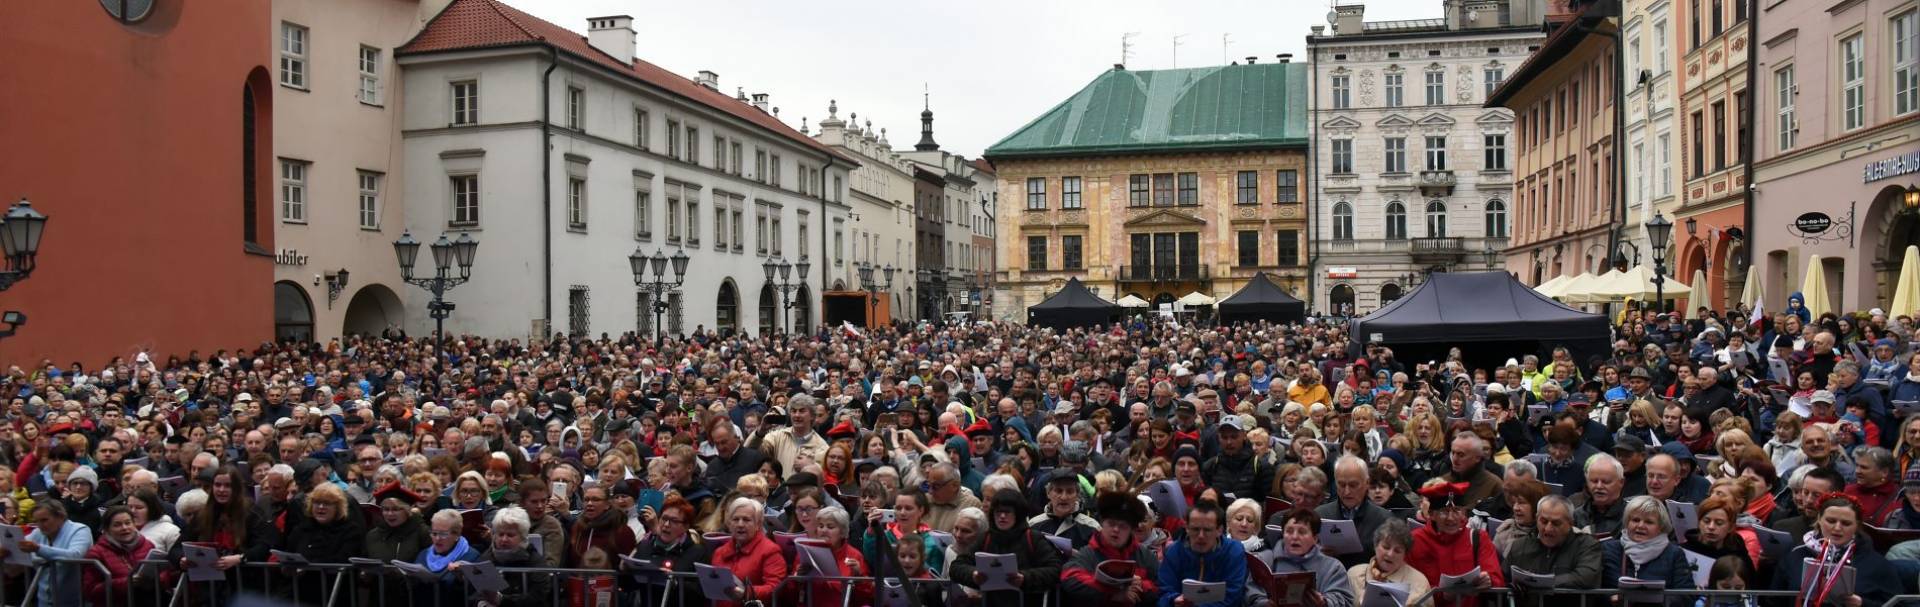 Absolutny fenomen: tłum na Małym Rynku pobił rekord